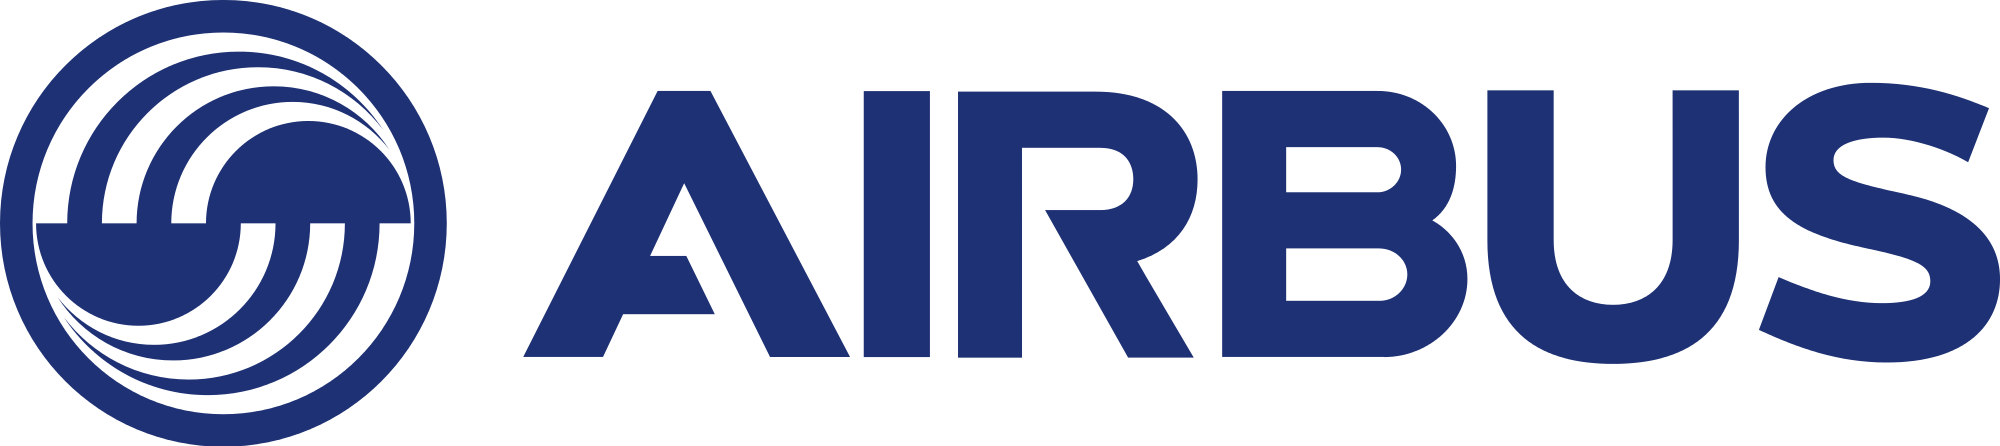 Airbus Logo Transparent Image